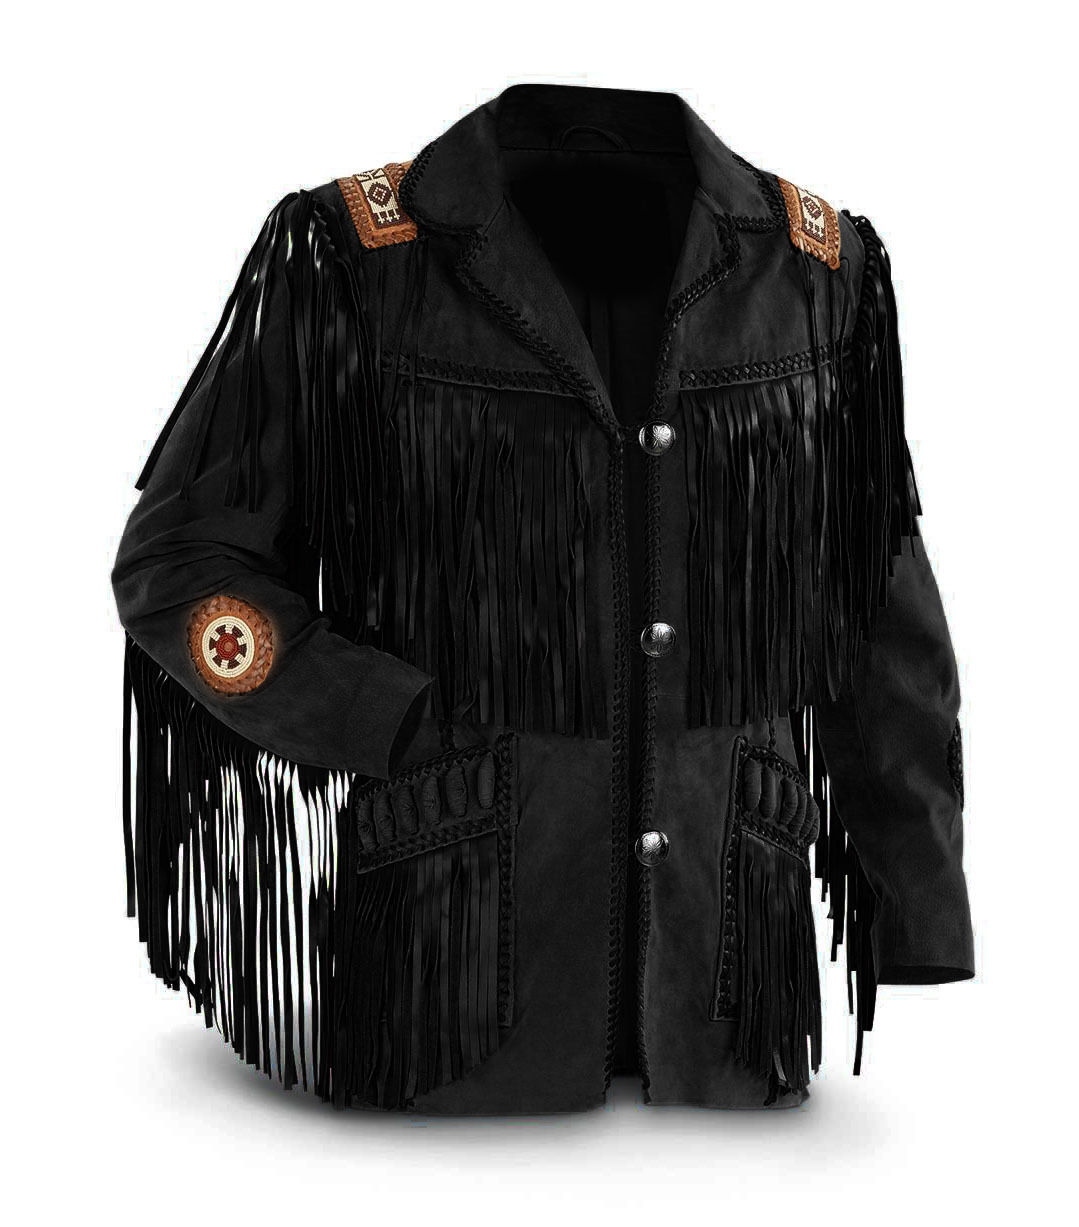 Men's Native American Buckskin Black Buffalo Suede Leather Western ...